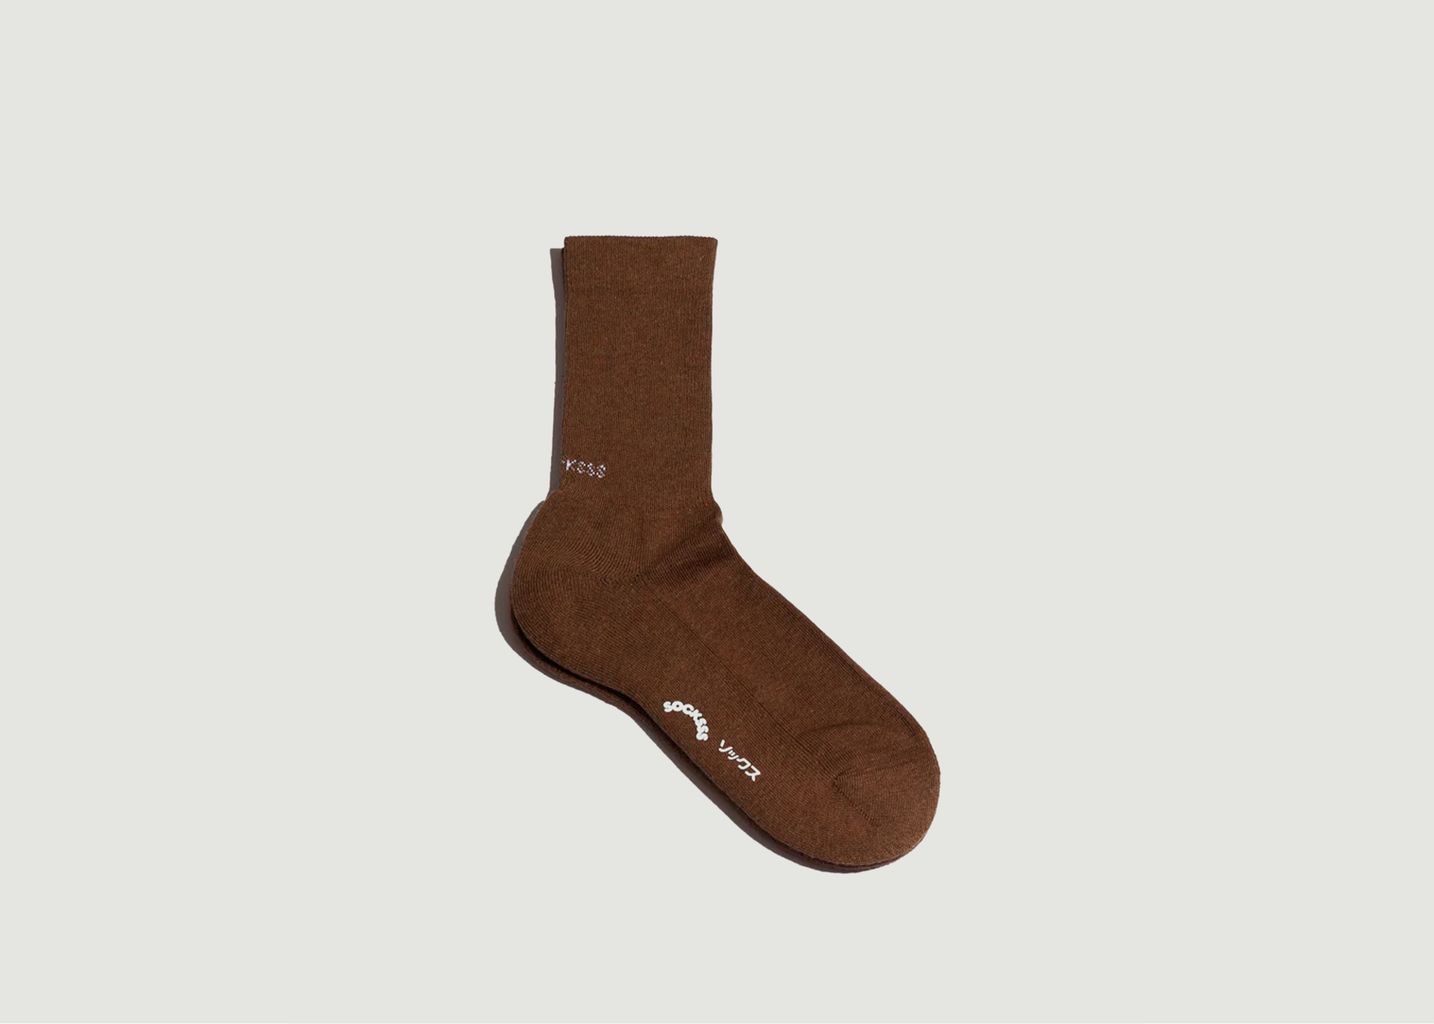 Socksss Golden Brown Organic Cotton Socks